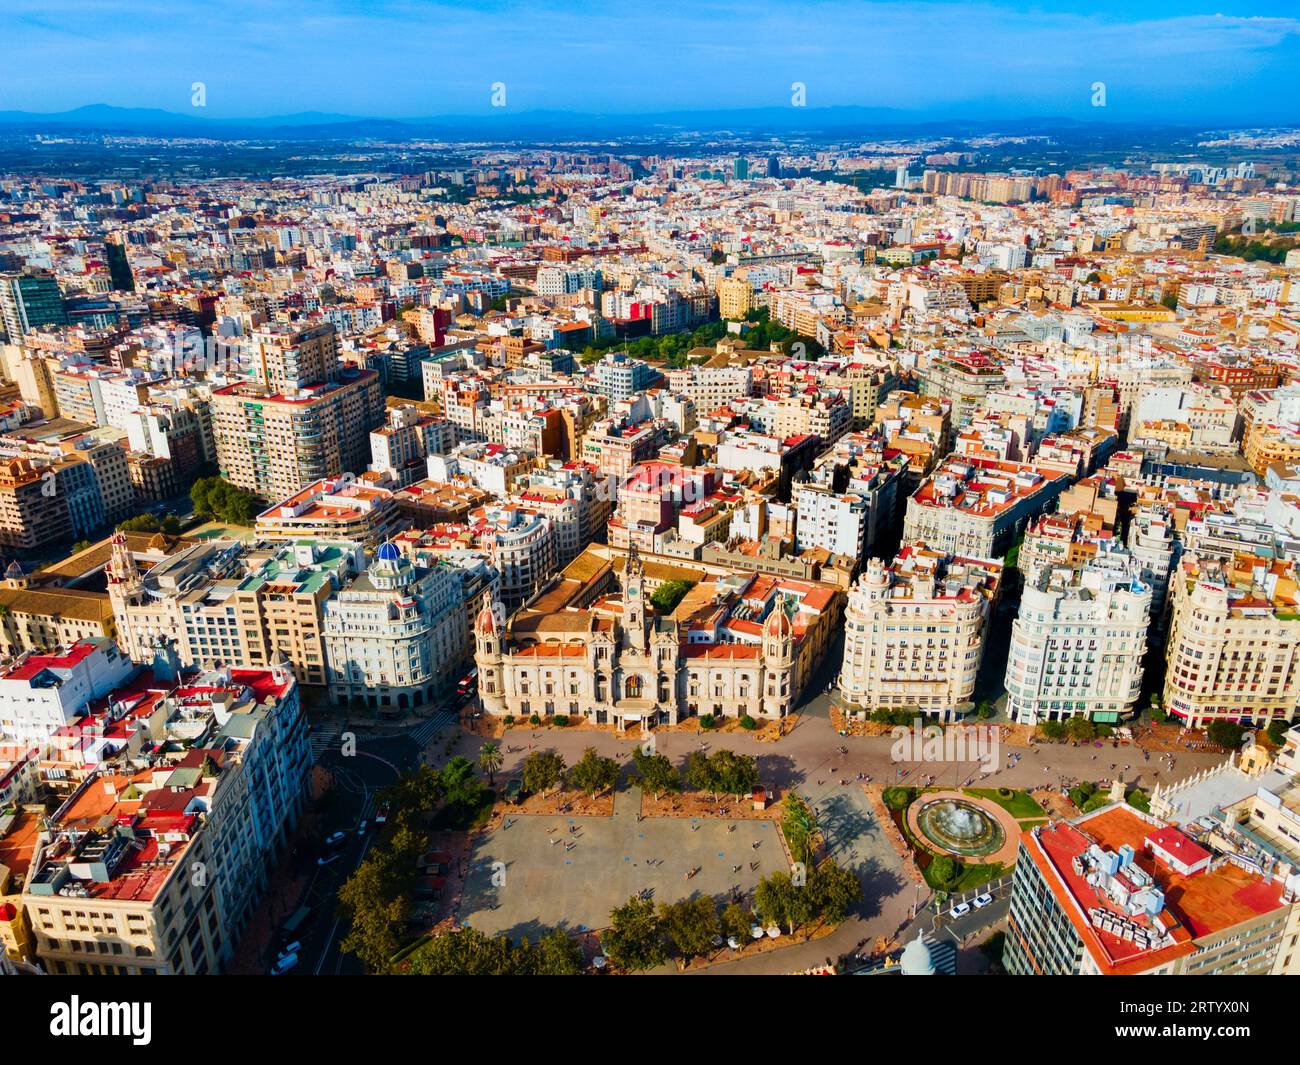 Hôtel de ville de Valence à la place Plaza del Ajuntament, vue panoramique aérienne. Valence est la troisième municipalité la plus peuplée d'Espagne. Banque D'Images